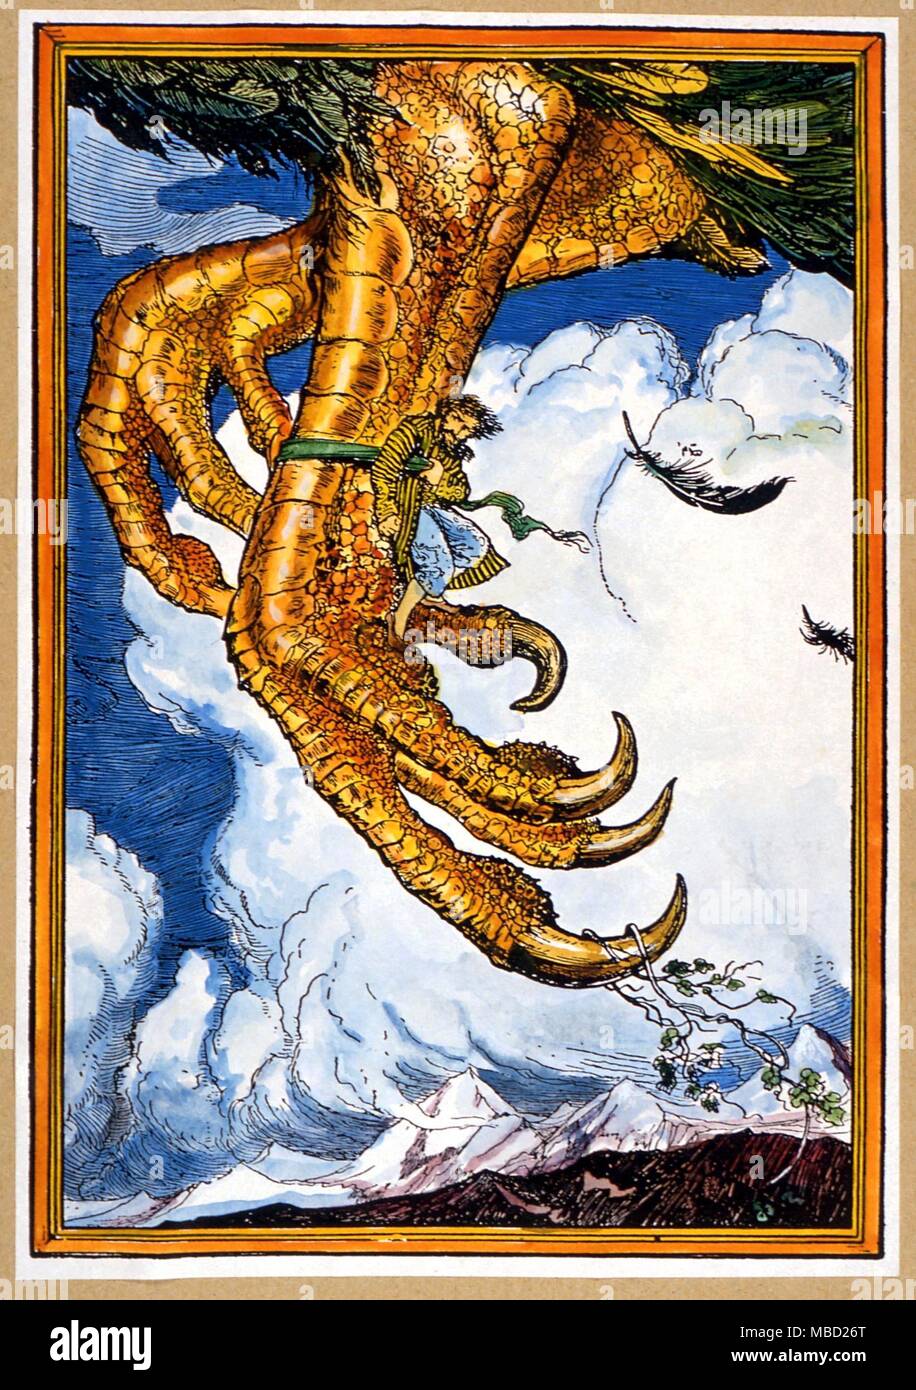 Des monstres. Illustration par Ford pour 'Les Voyages de Sinbad le marin' - Andrew Lang édition de 'l'Arabian Nights' 1908 Banque D'Images